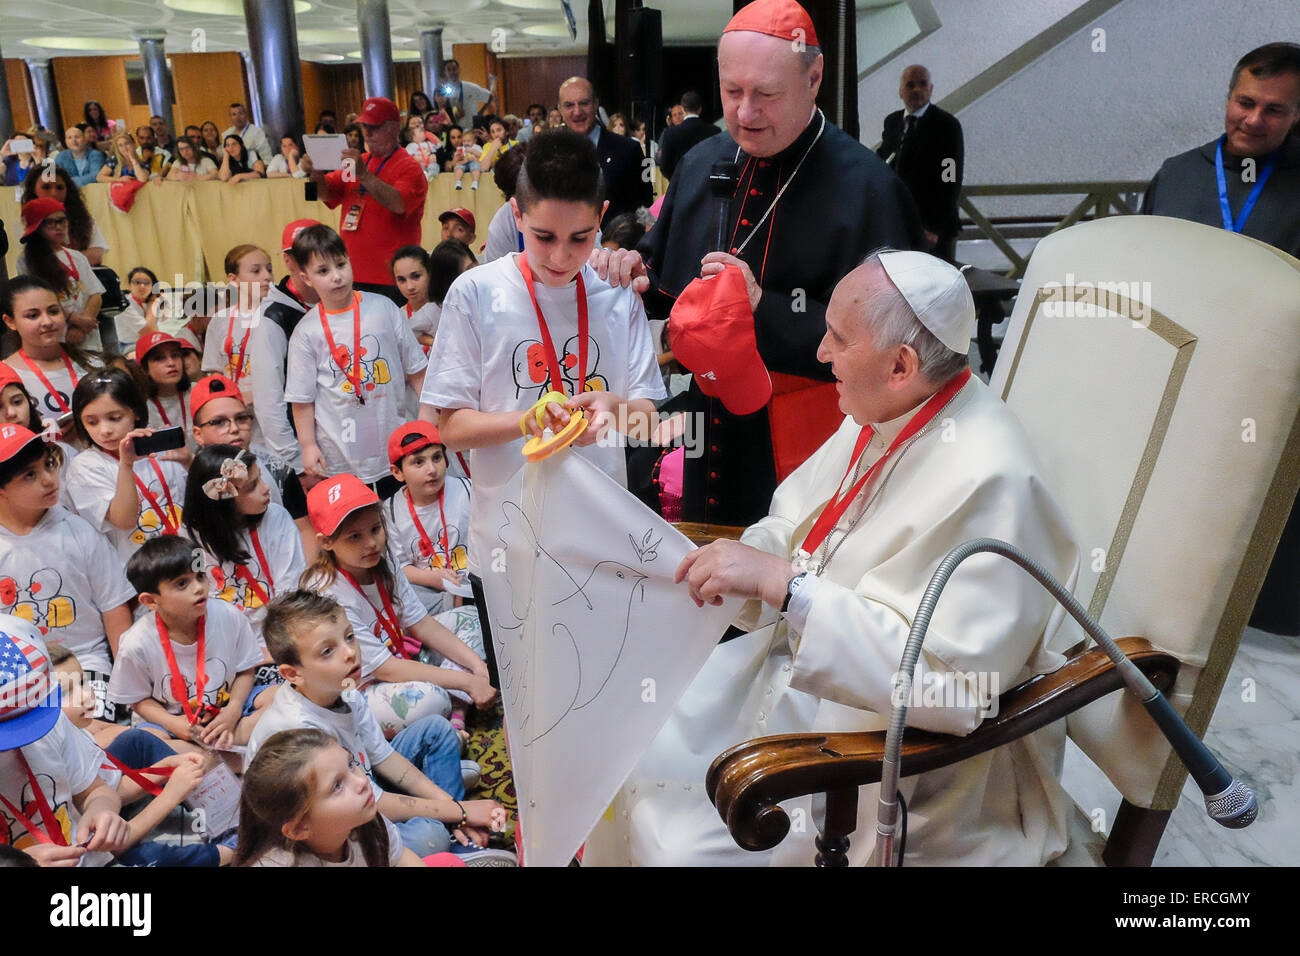 Vatikan-Stadt. 30. Mai 2015. Papst Francis treffen den Zug der Kinder - 30 kann 2015 Credit: wirklich Easy Star/Alamy Live News Stockfoto